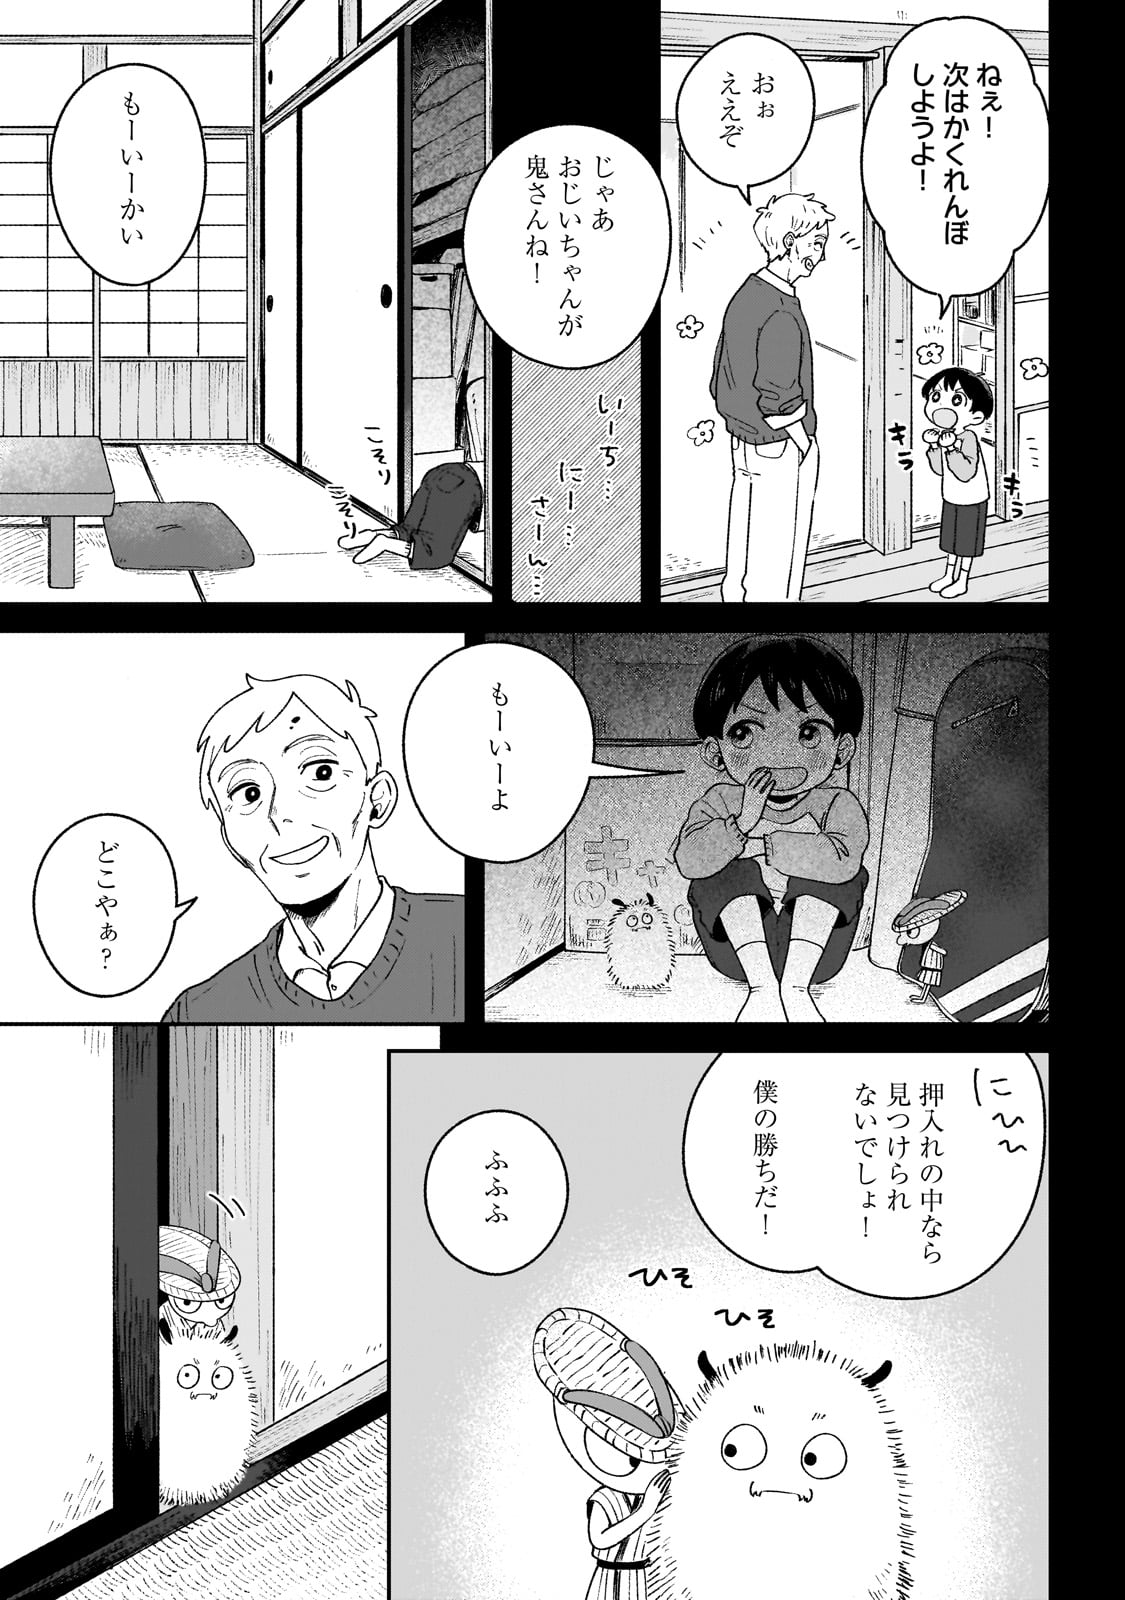 Boku to Ayakashi no 365 Nichi - Chapter 2 - Page 11